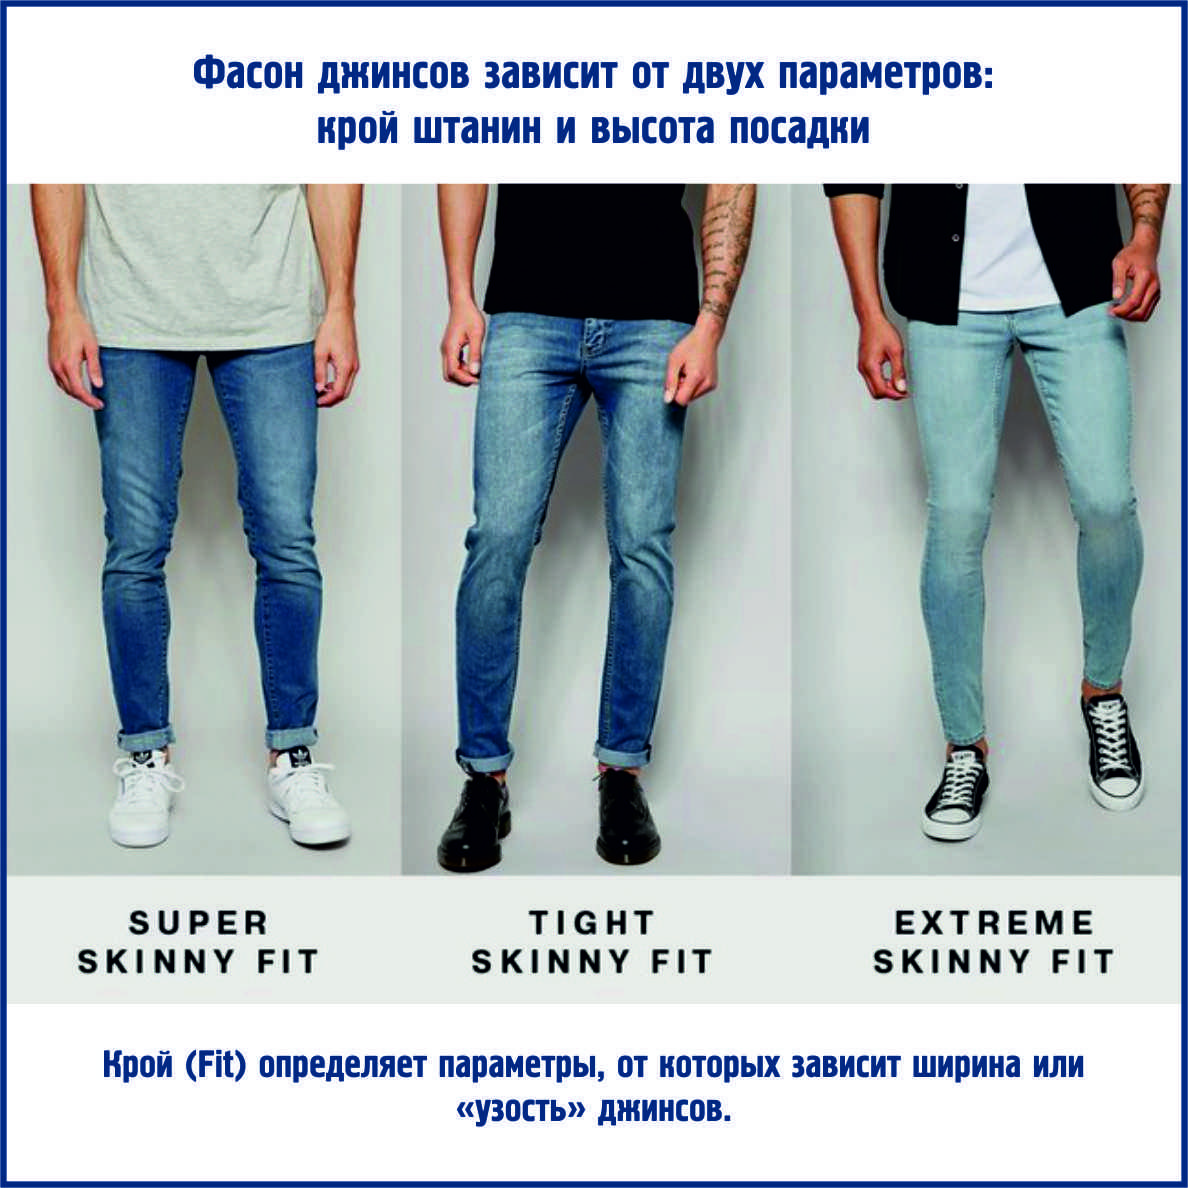 Модные мужские джинсы 2021: новинки, тренды, фото
модные мужские джинсы 2021 — modnayadama